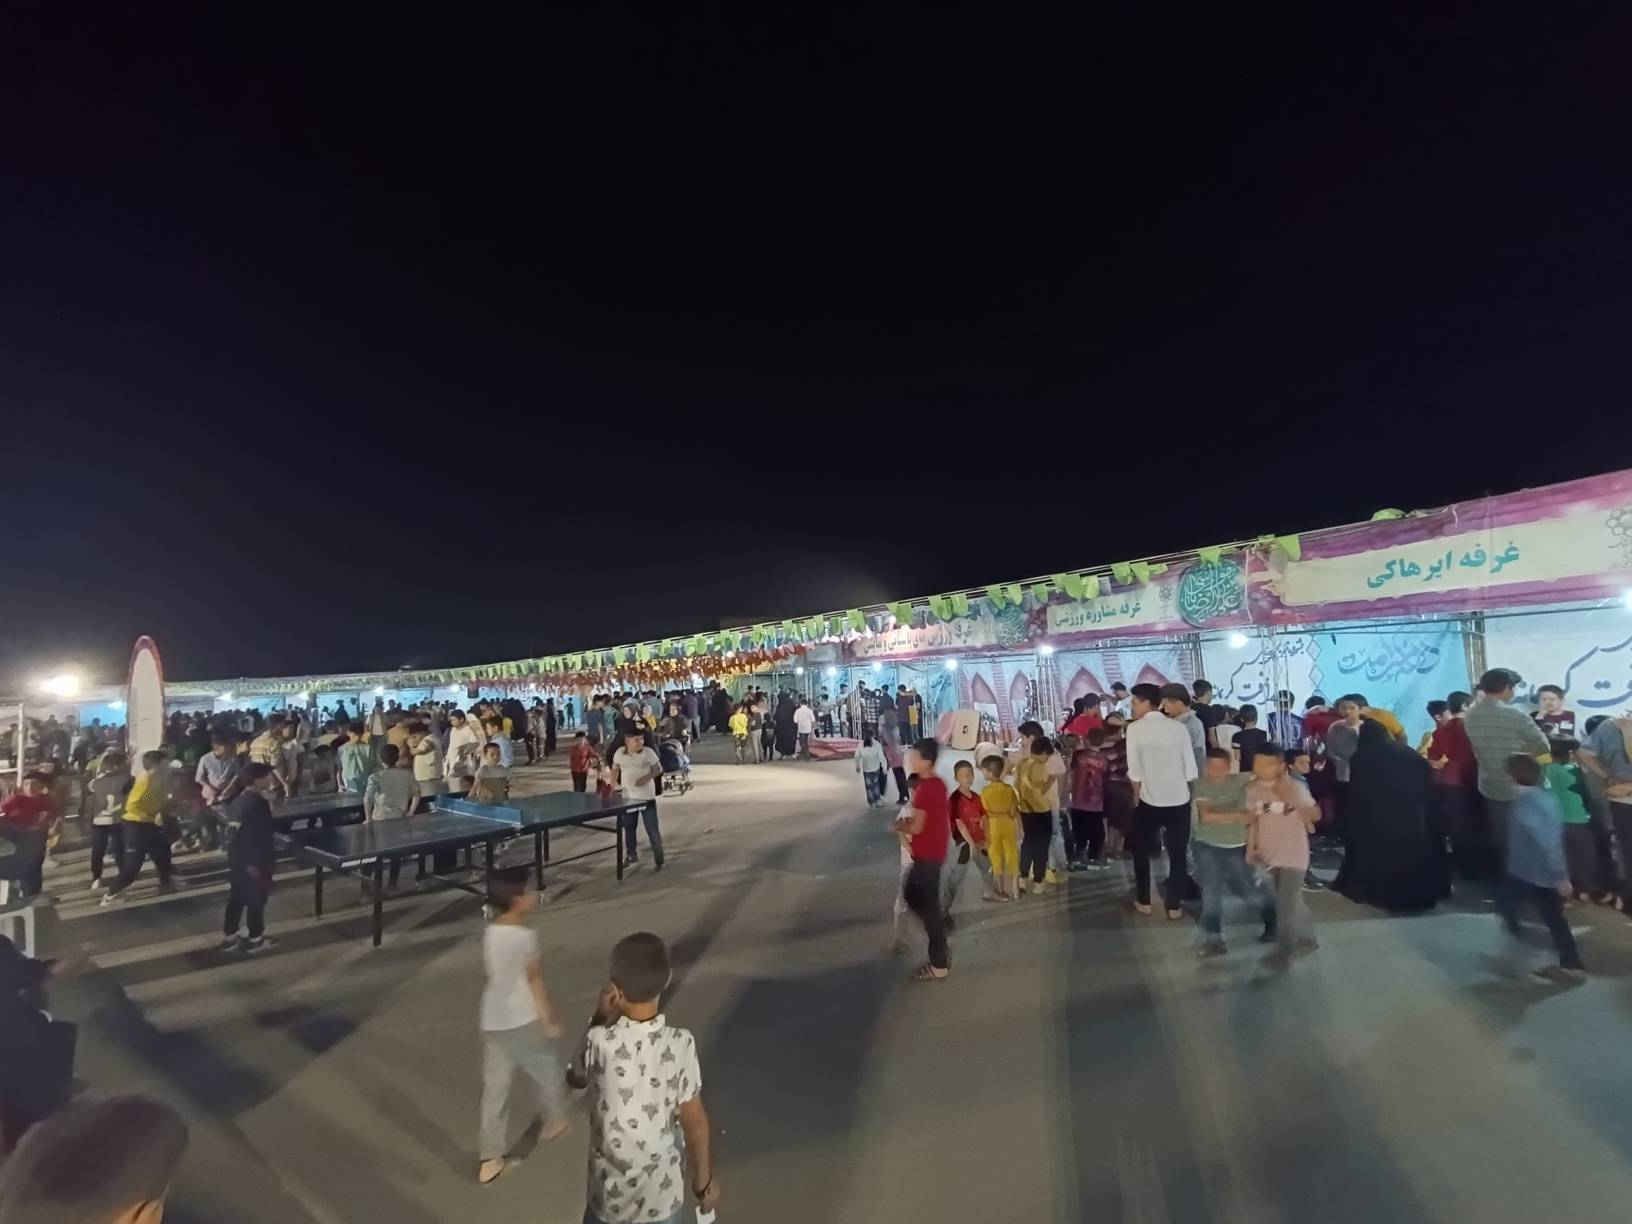 جشنواره فرهنگی، تفریحی و ورزشی رأفت کریمانه در حاشیه شهر مشهد